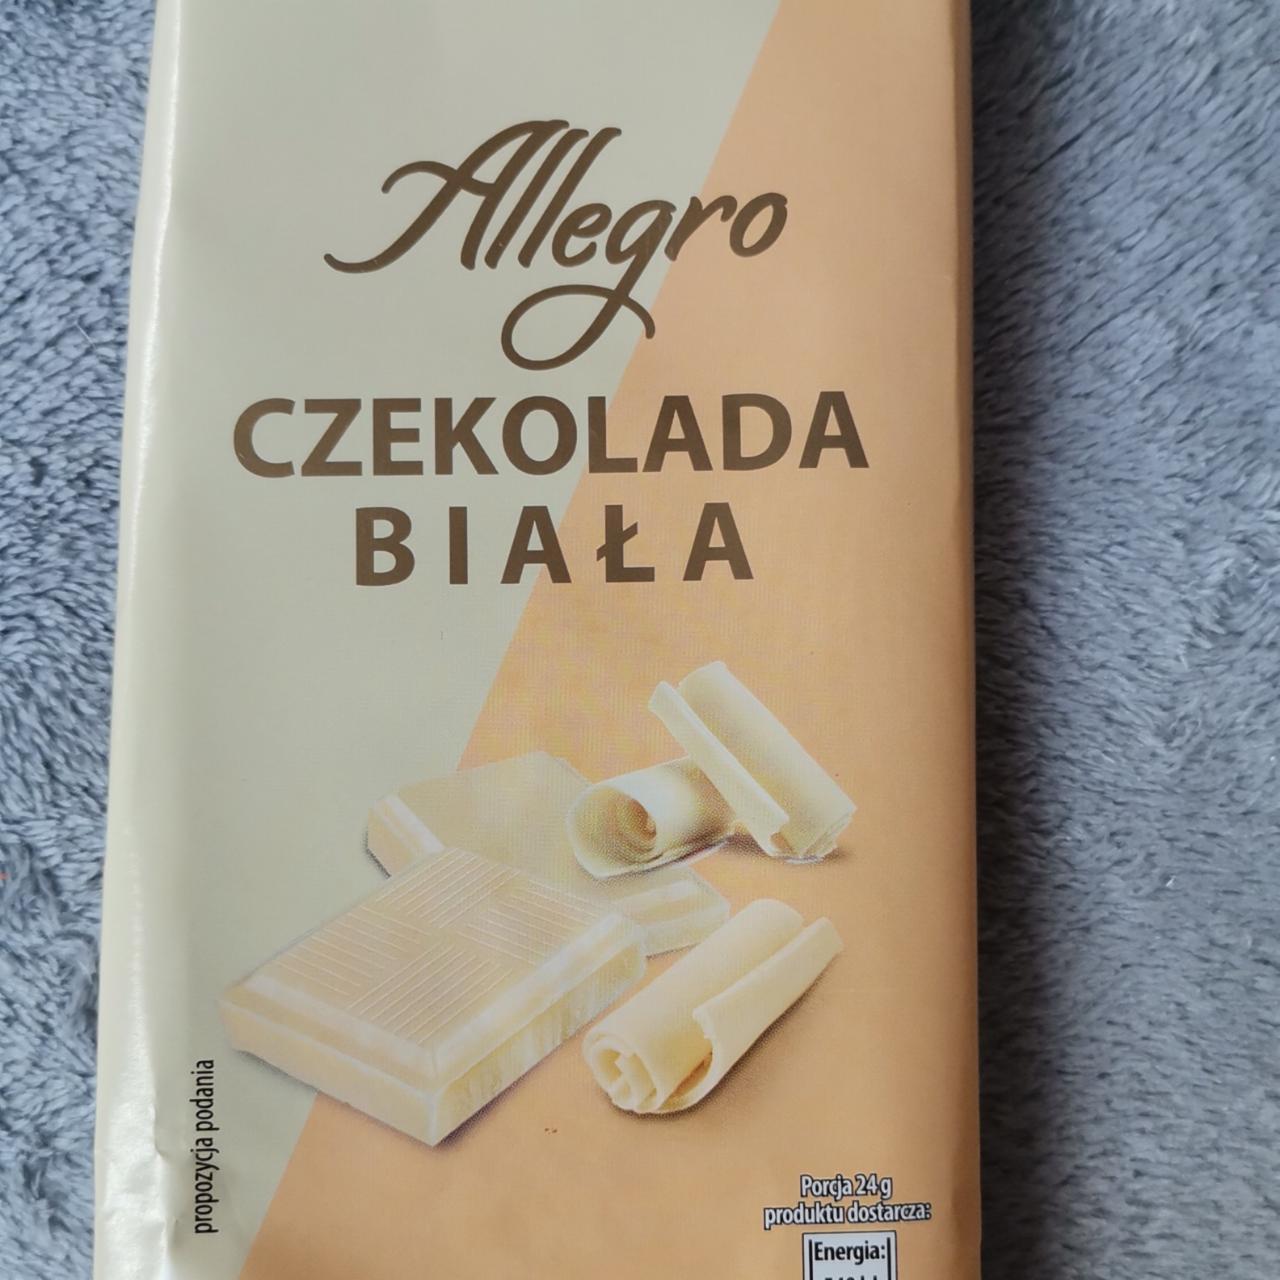 Zdjęcia - Czekolada biała Allegro